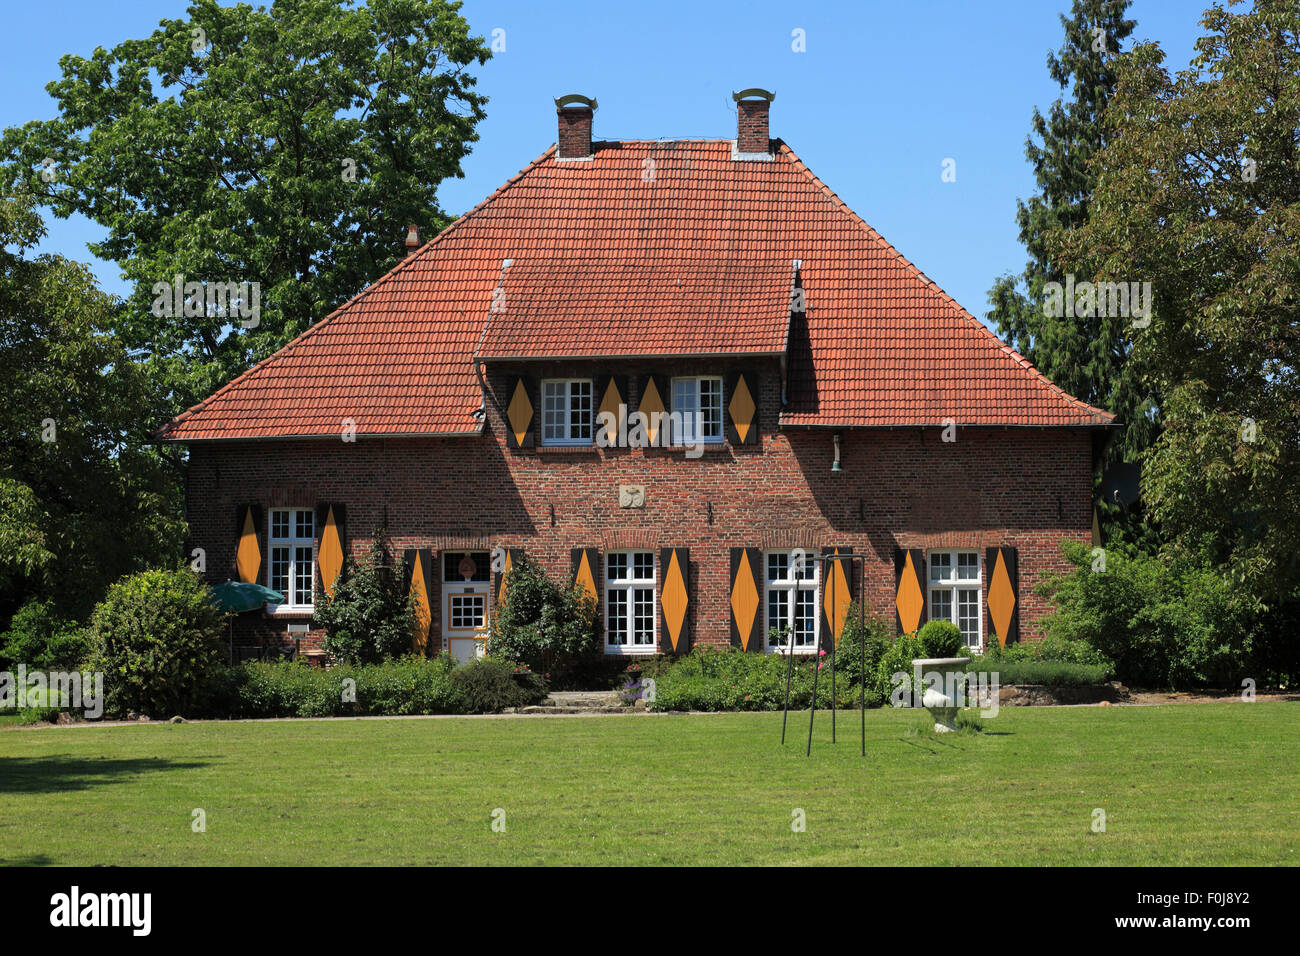 Wasserschloss Haus Kretier in Rhede-Vardingholt, Münsterland, Nordrhein-Westfalen, erstellte Darm Hillerding Stockfoto